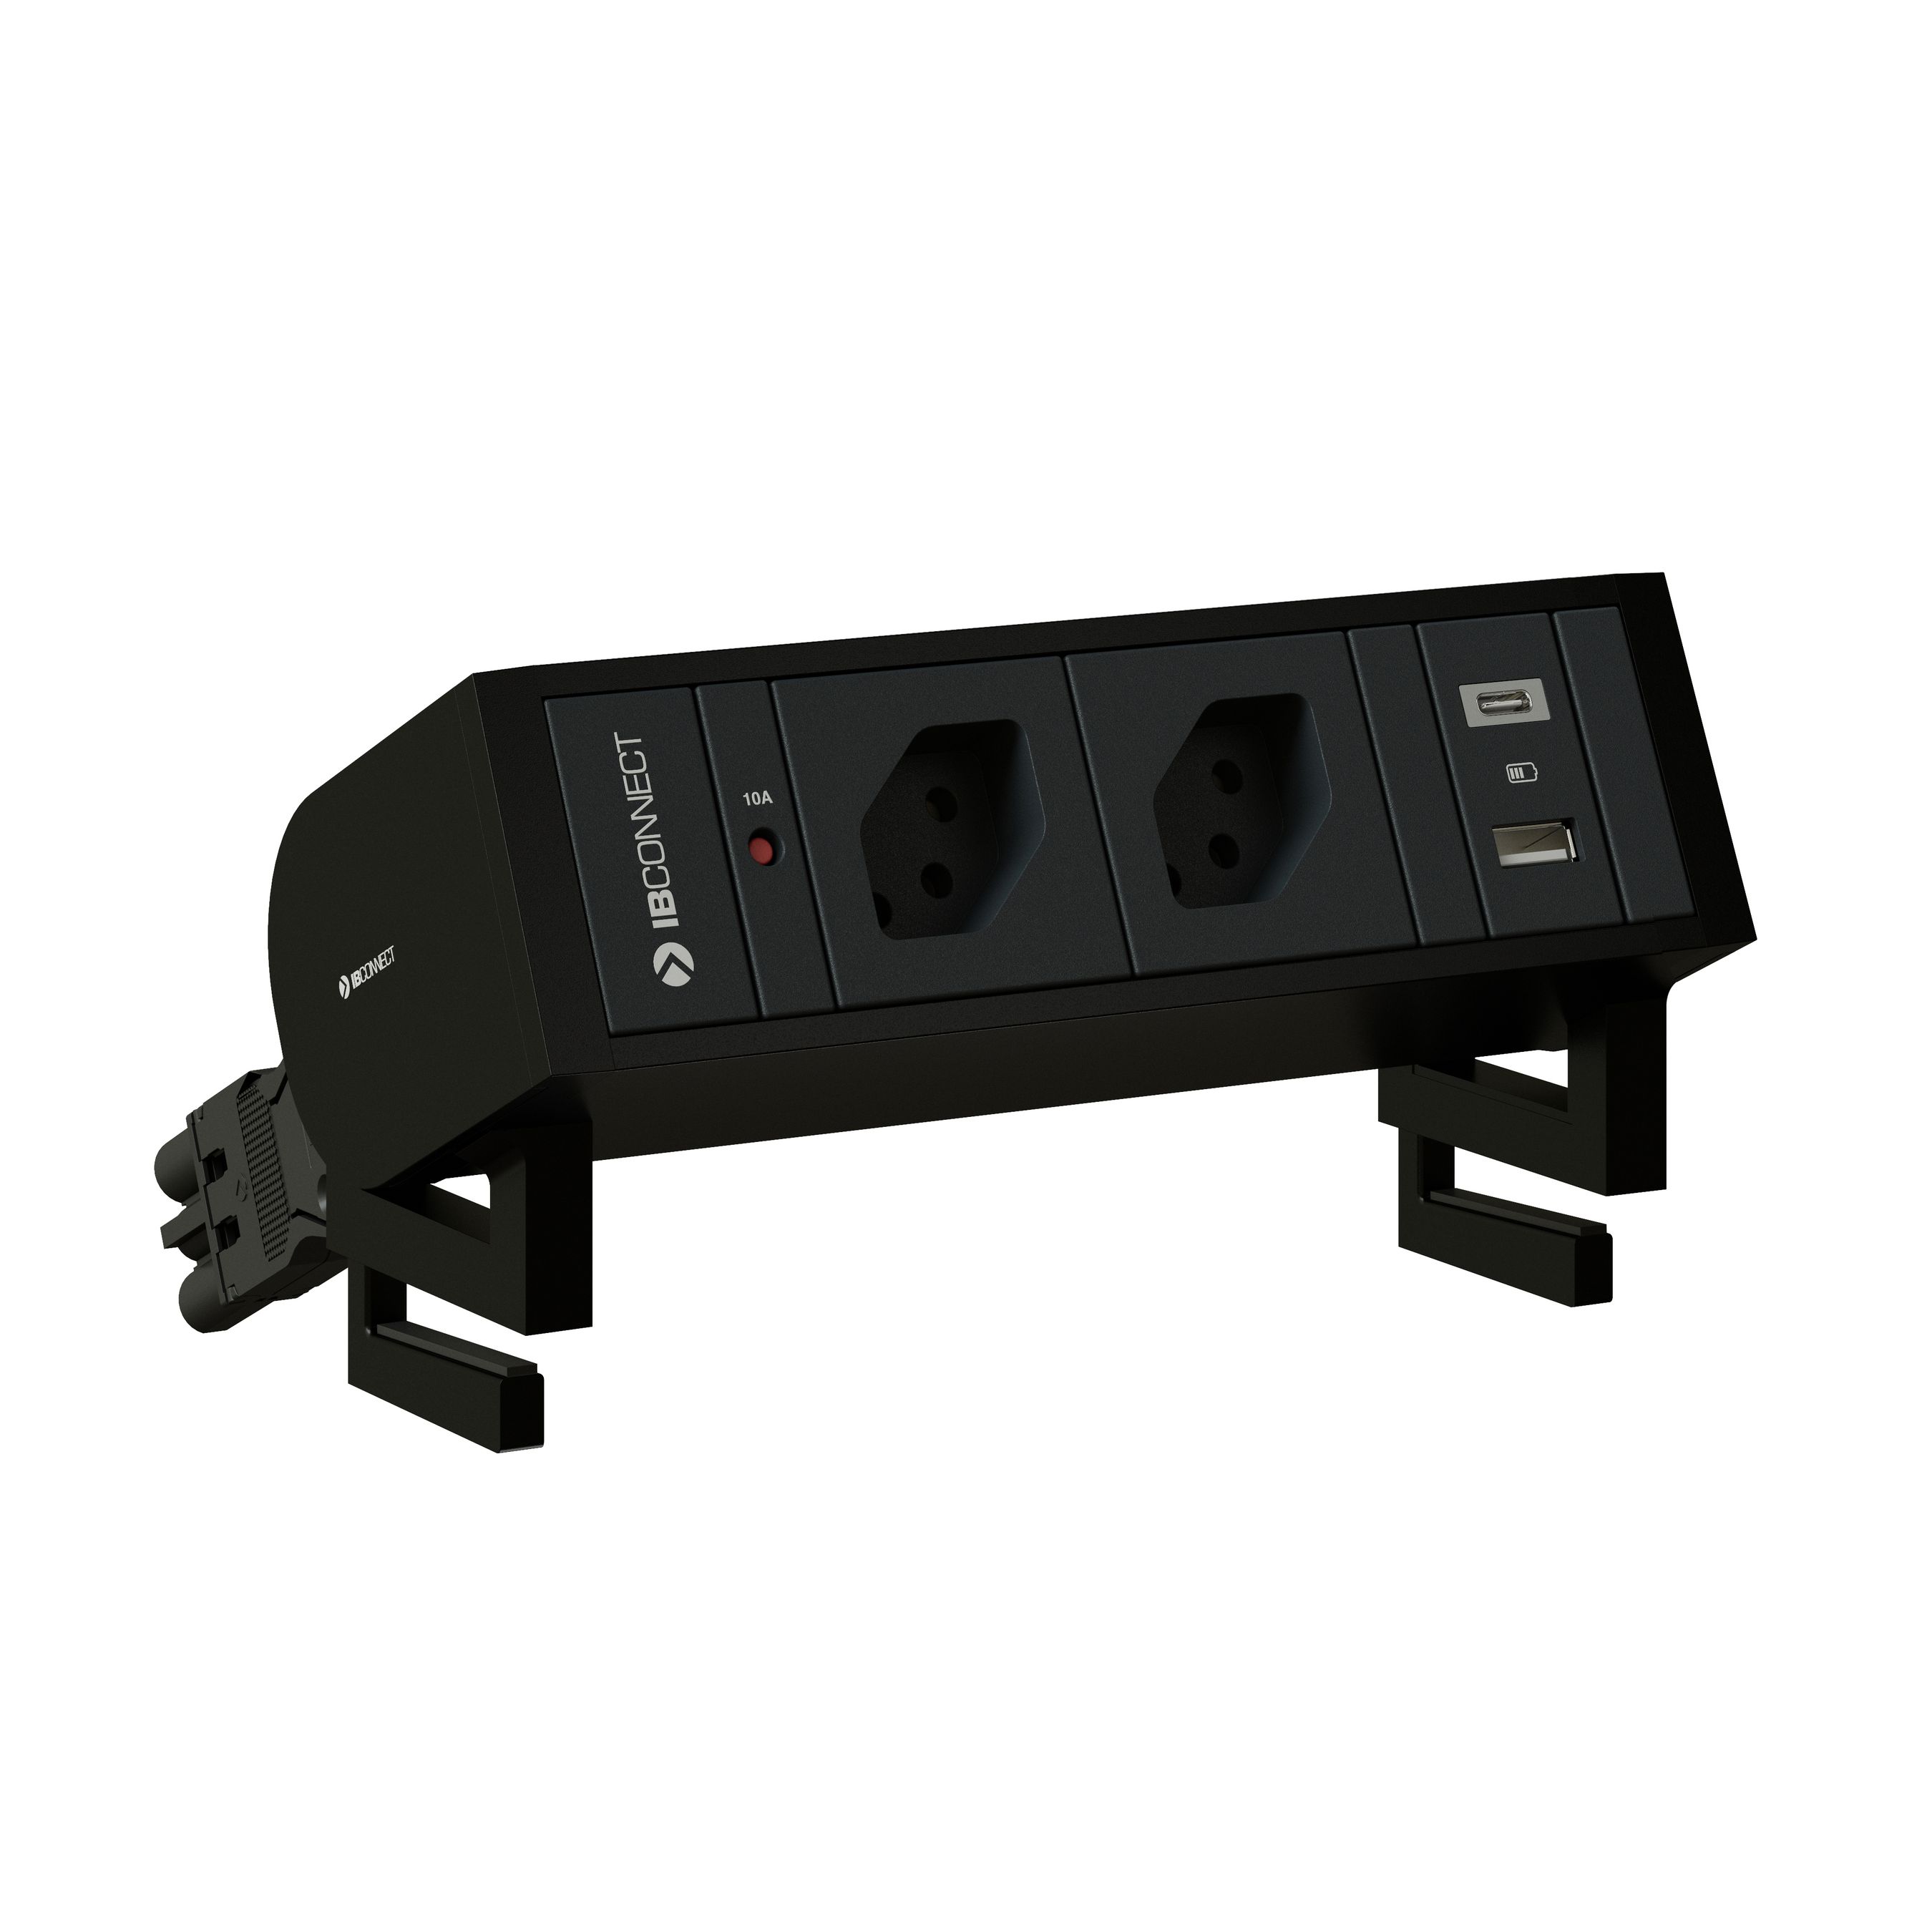 SUPRA presa multipla nero 2x tipo 13 1x USB-A/C +set di fissaggio